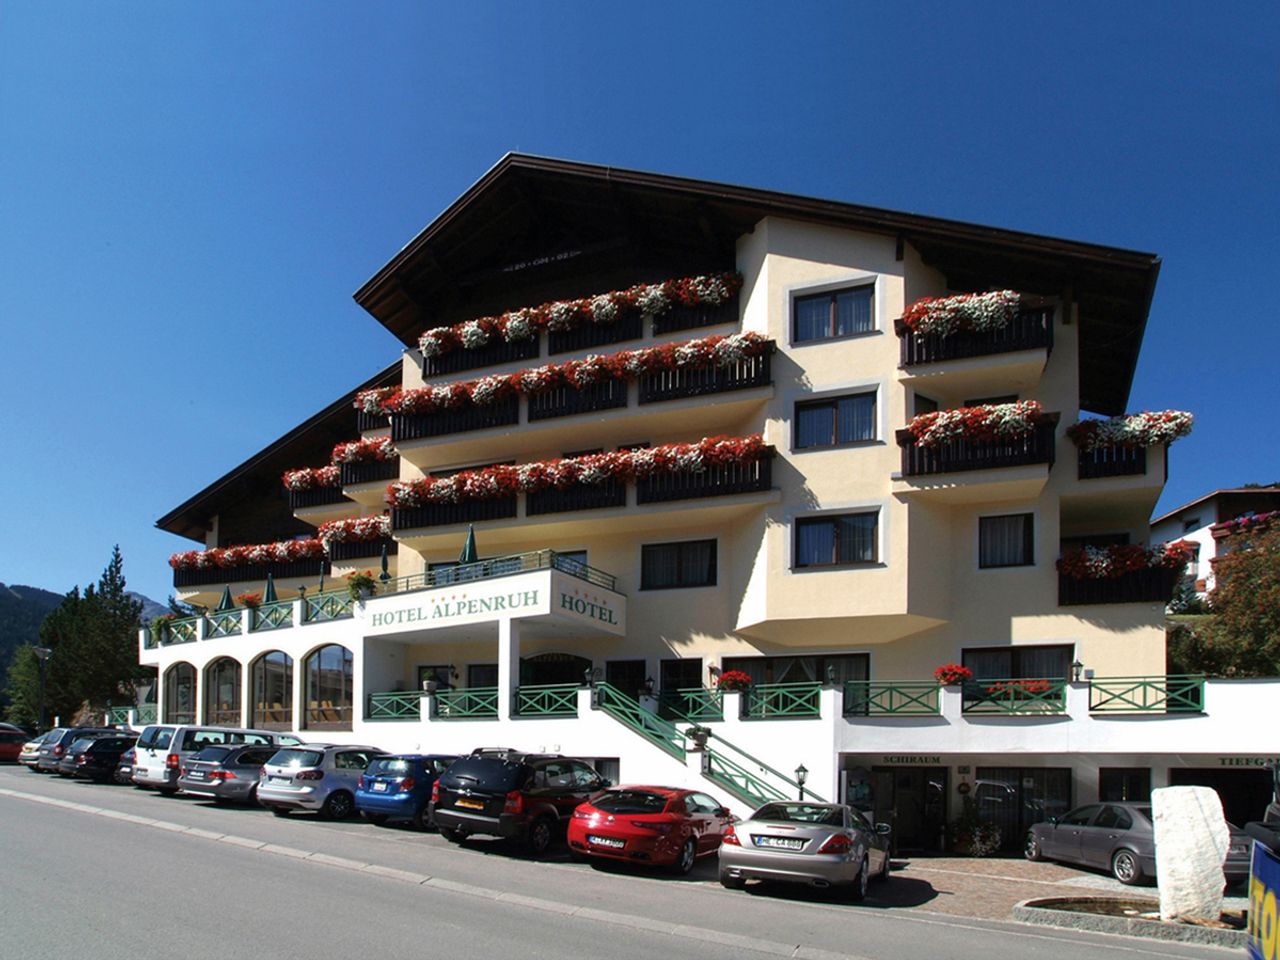 8 Tage Wohlfühlen im Hotel Alpenruh in Serfaus